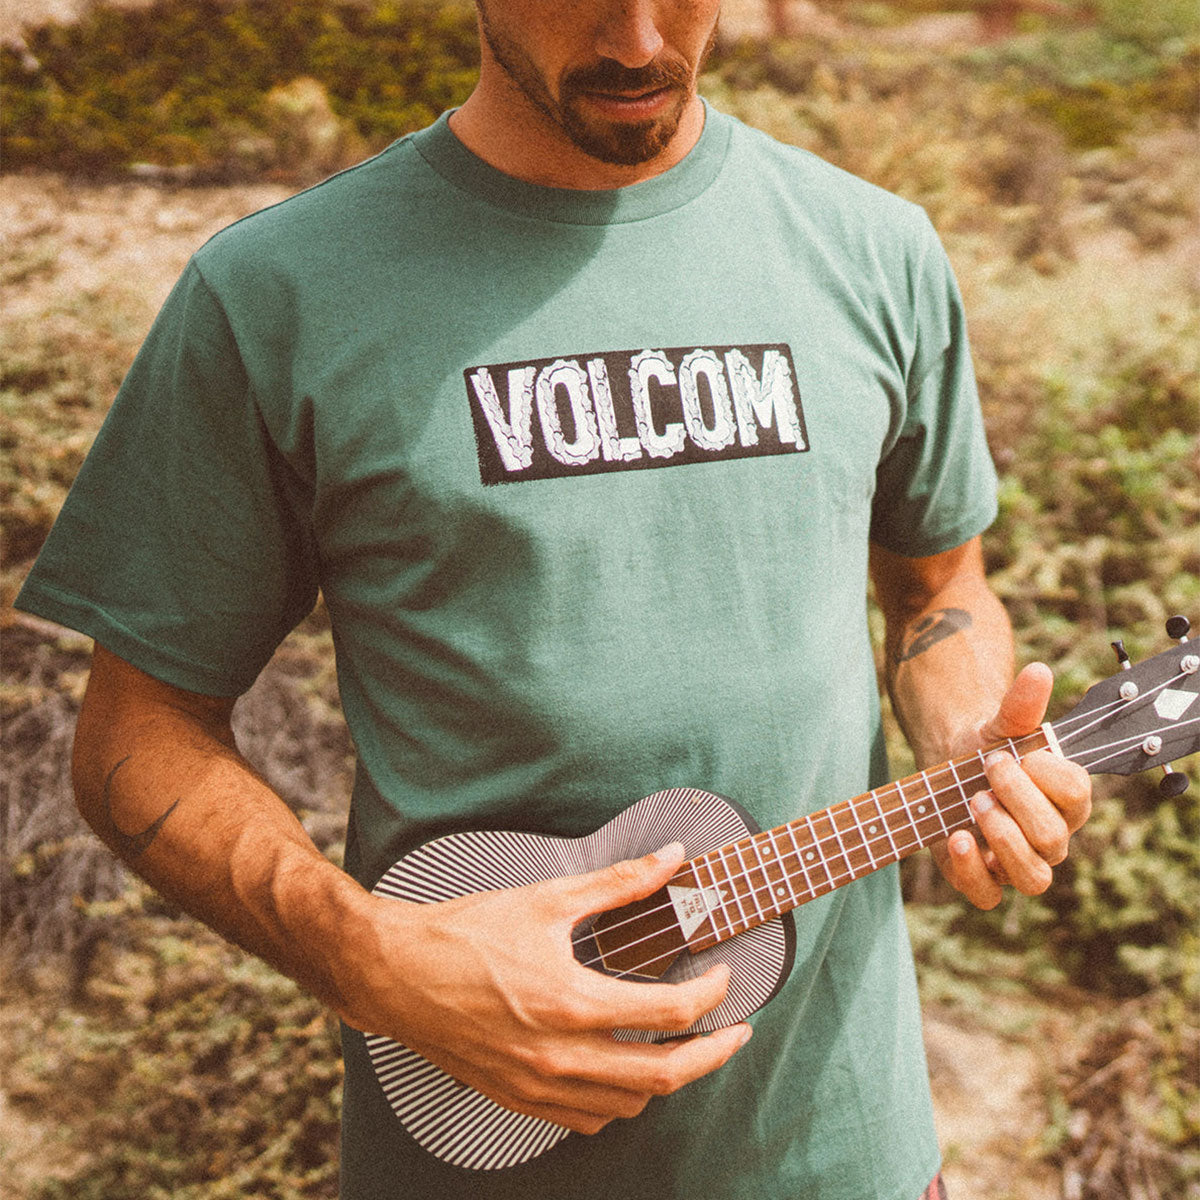 Volcom Chaindrive T-Shirt - Fir Green image 2